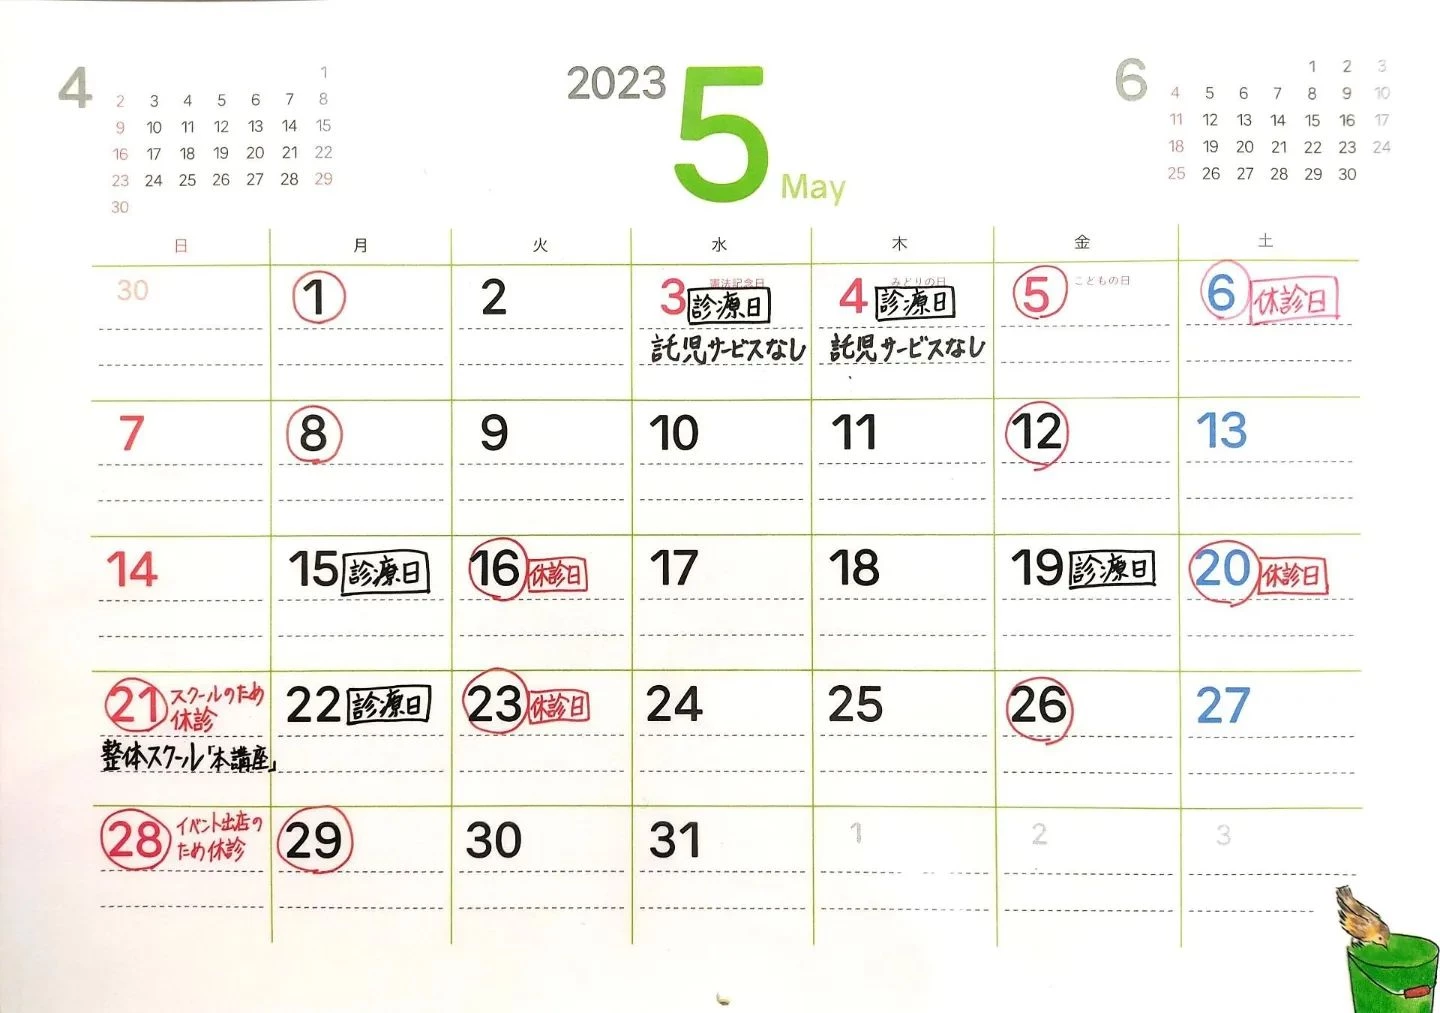 ゴールデンウィークの診療日カレンダーです